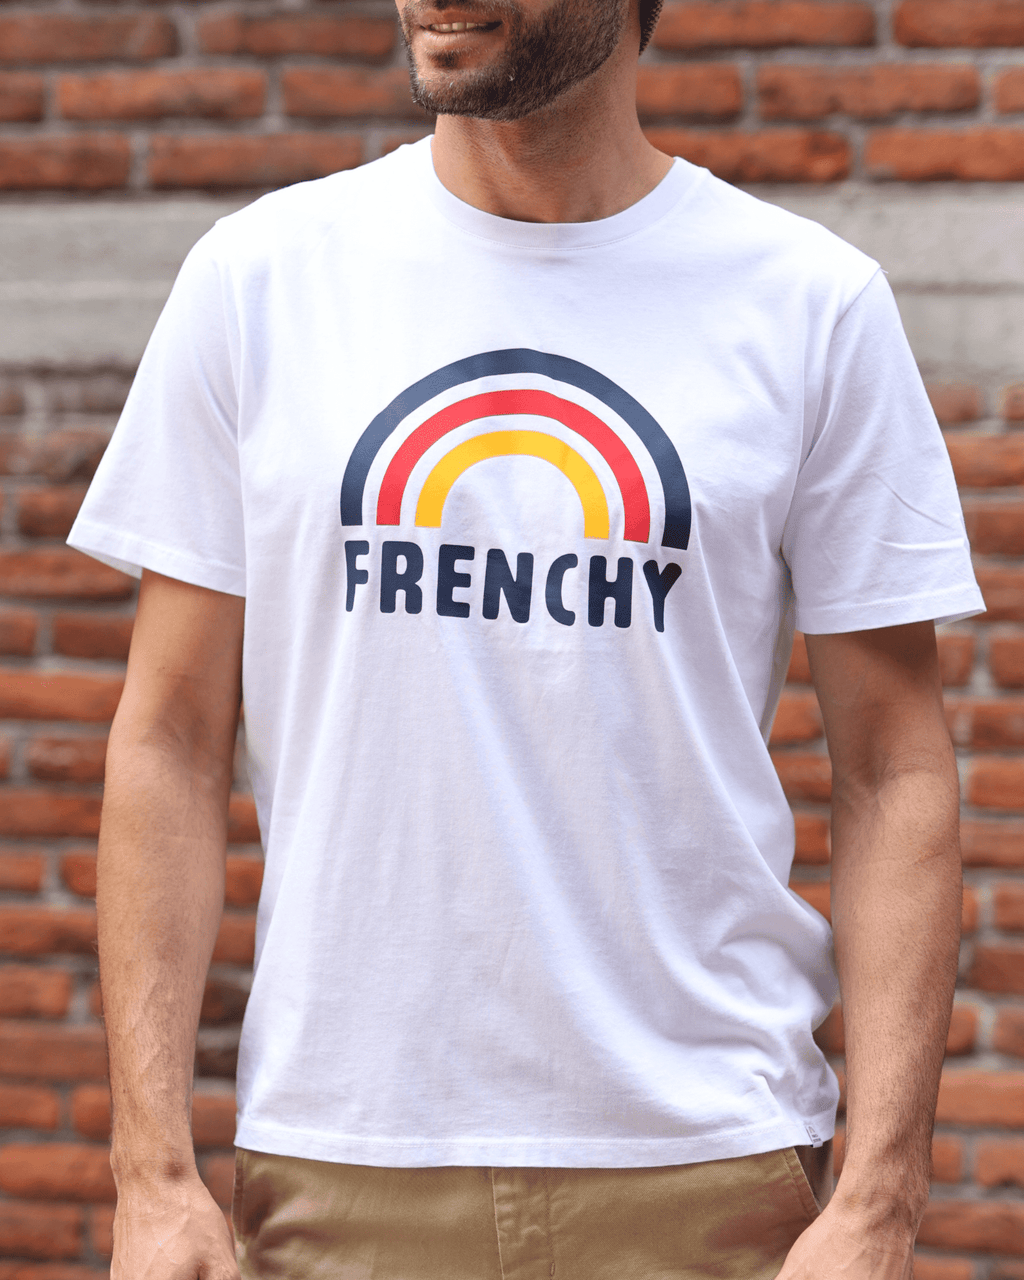 Playera con estampado "Frenchy" de French Disorder - para Él